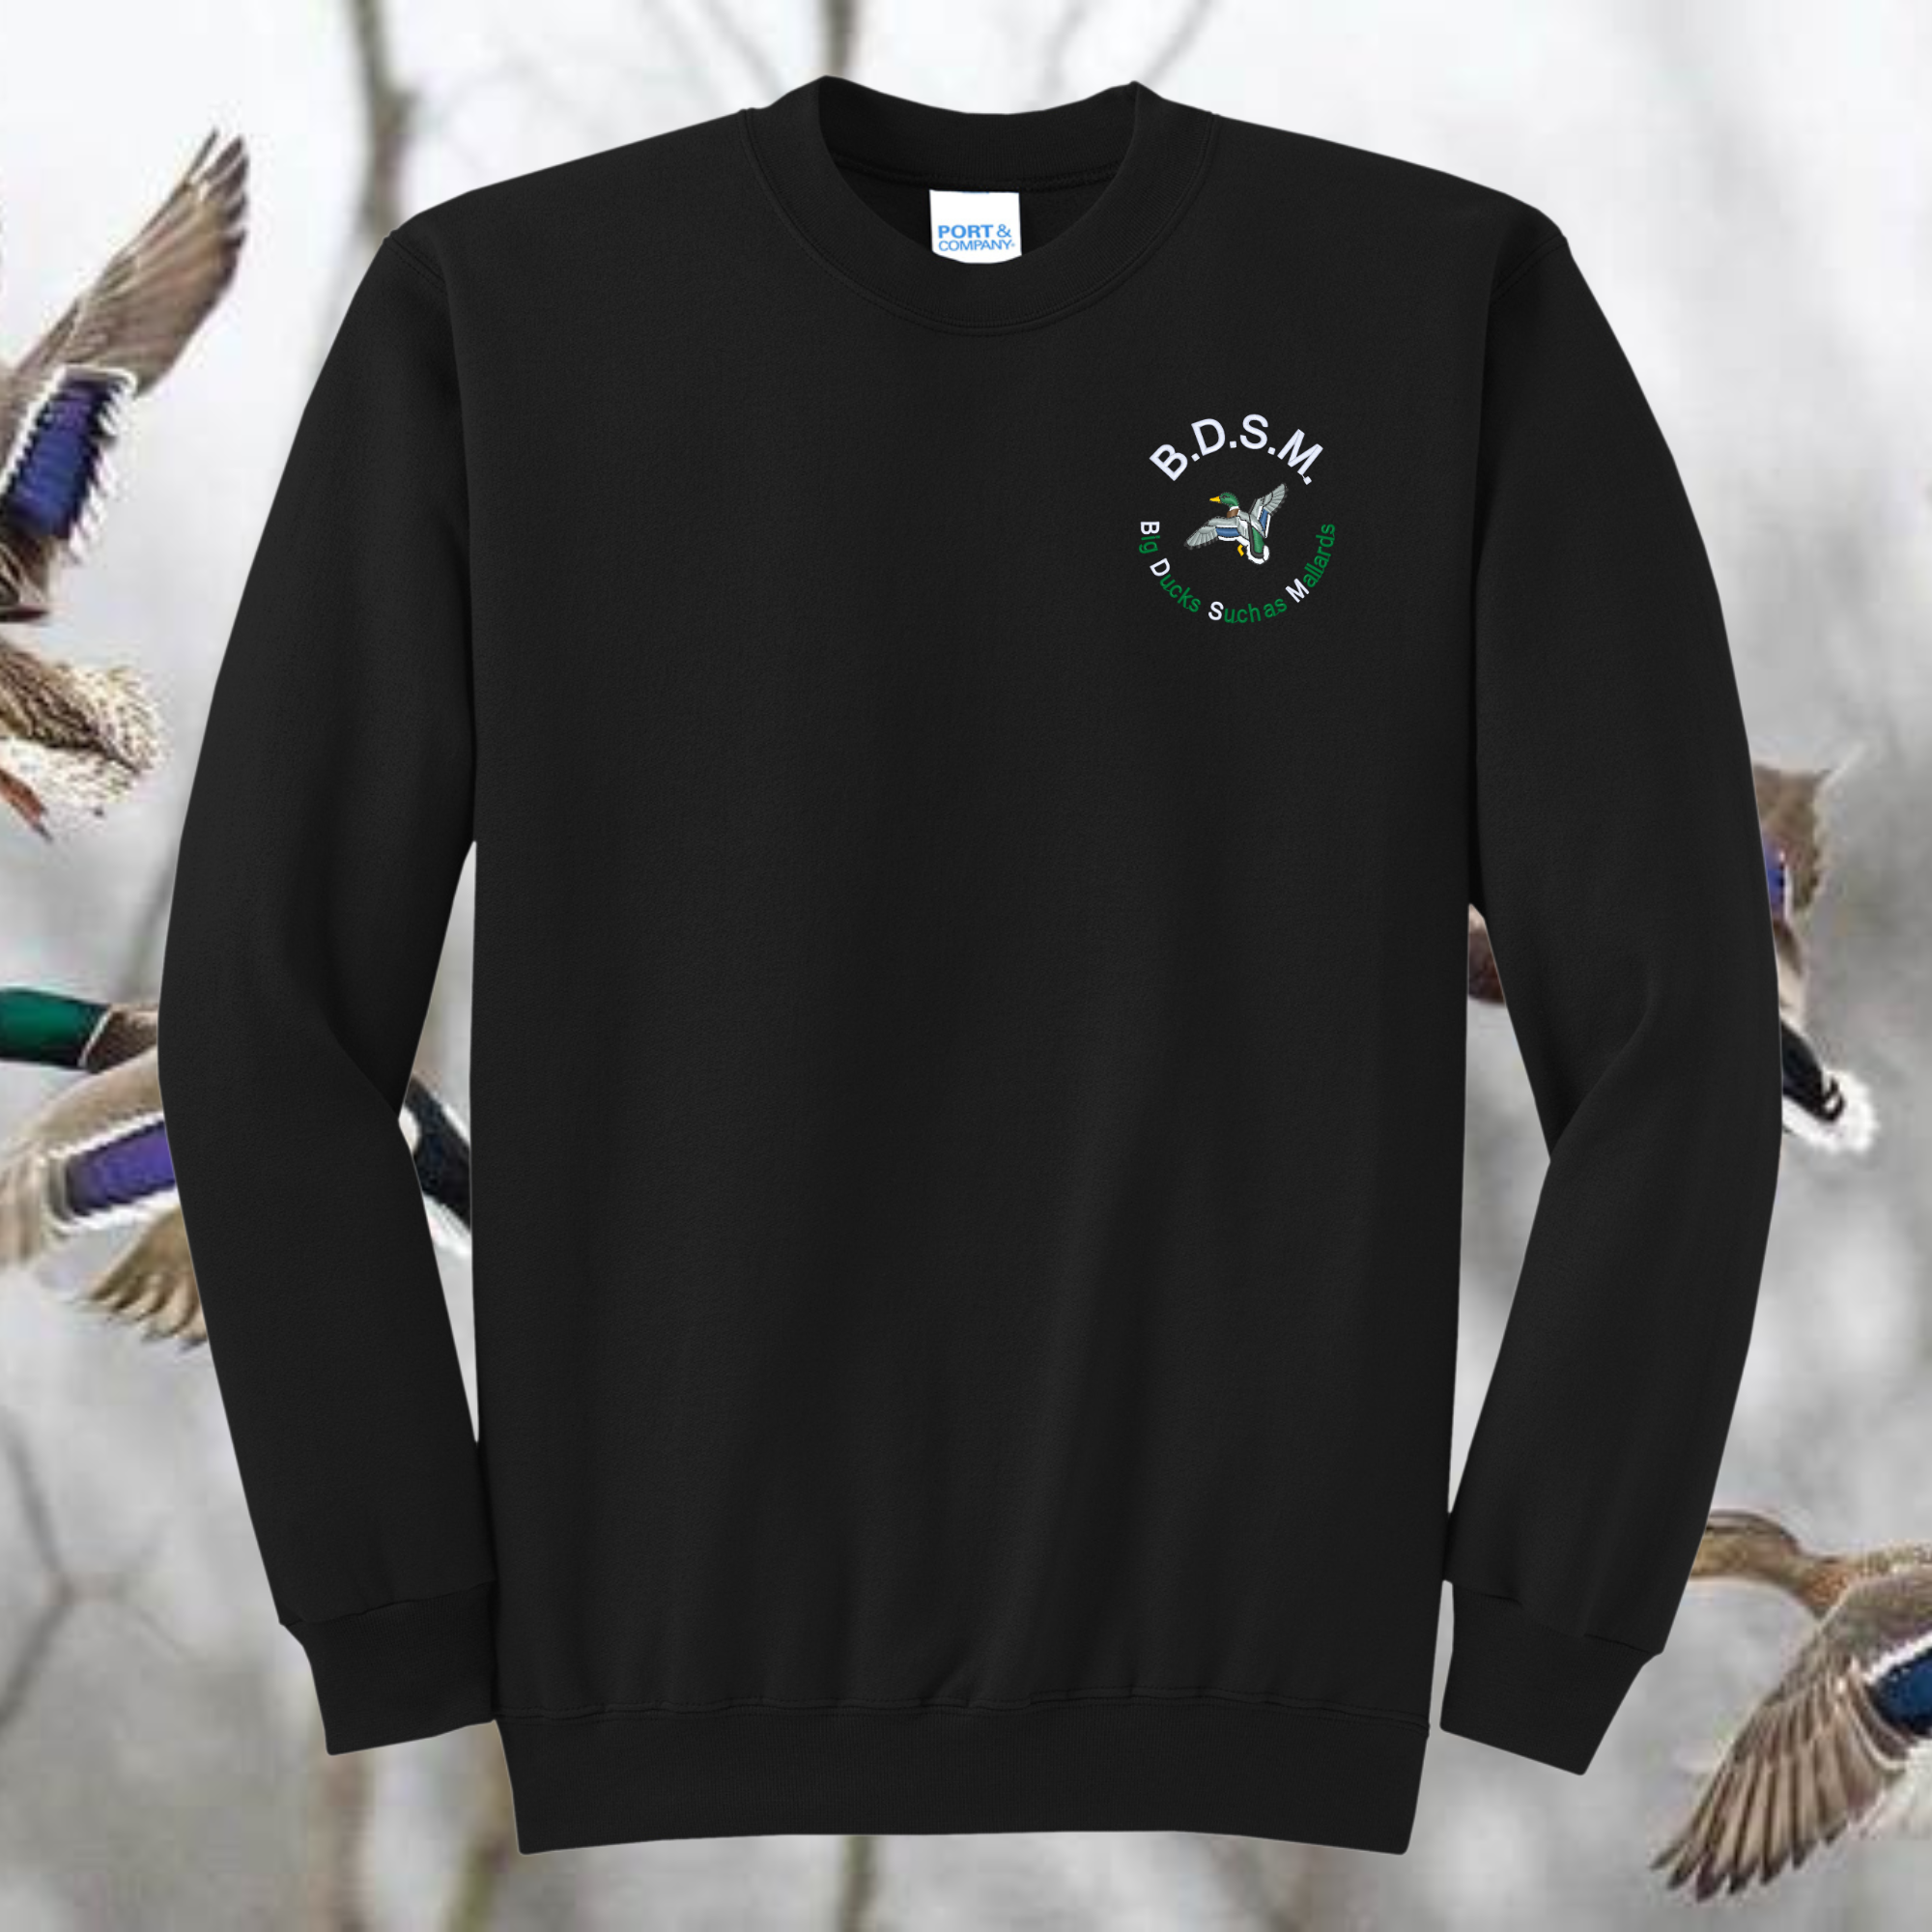 Big Ducks Such as Mallards BDSM Embroidered Crewneck Sweatshirt, Unisex